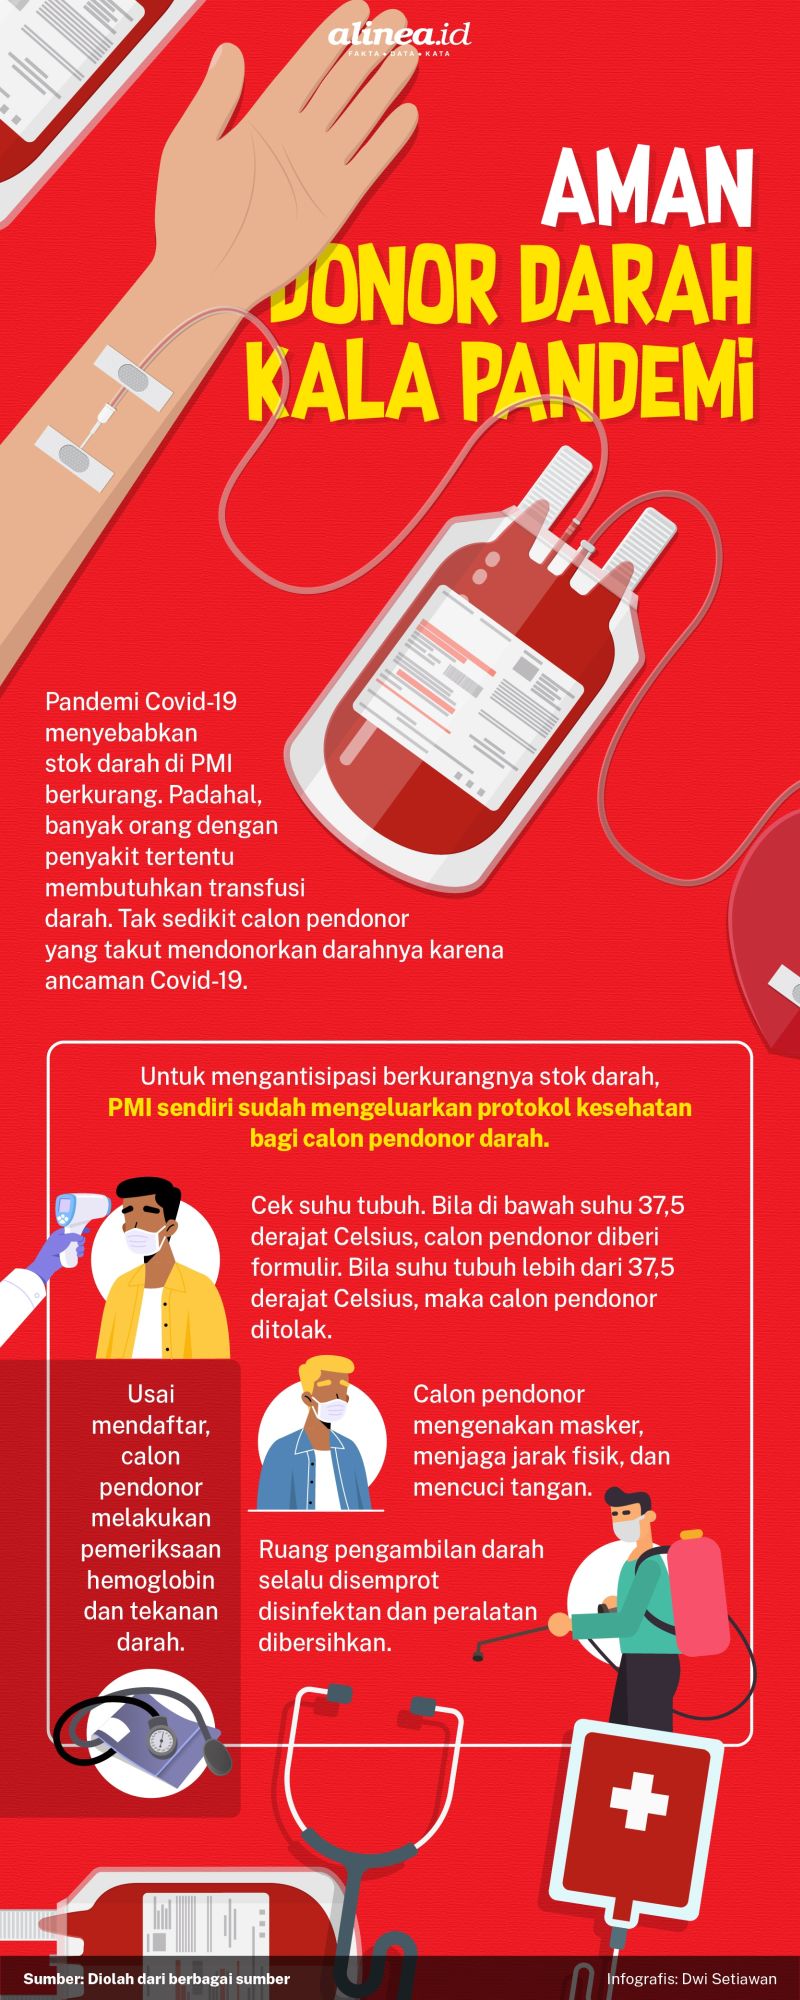 Infografik donor darah. Alinea.id/Dwi Setiawan.